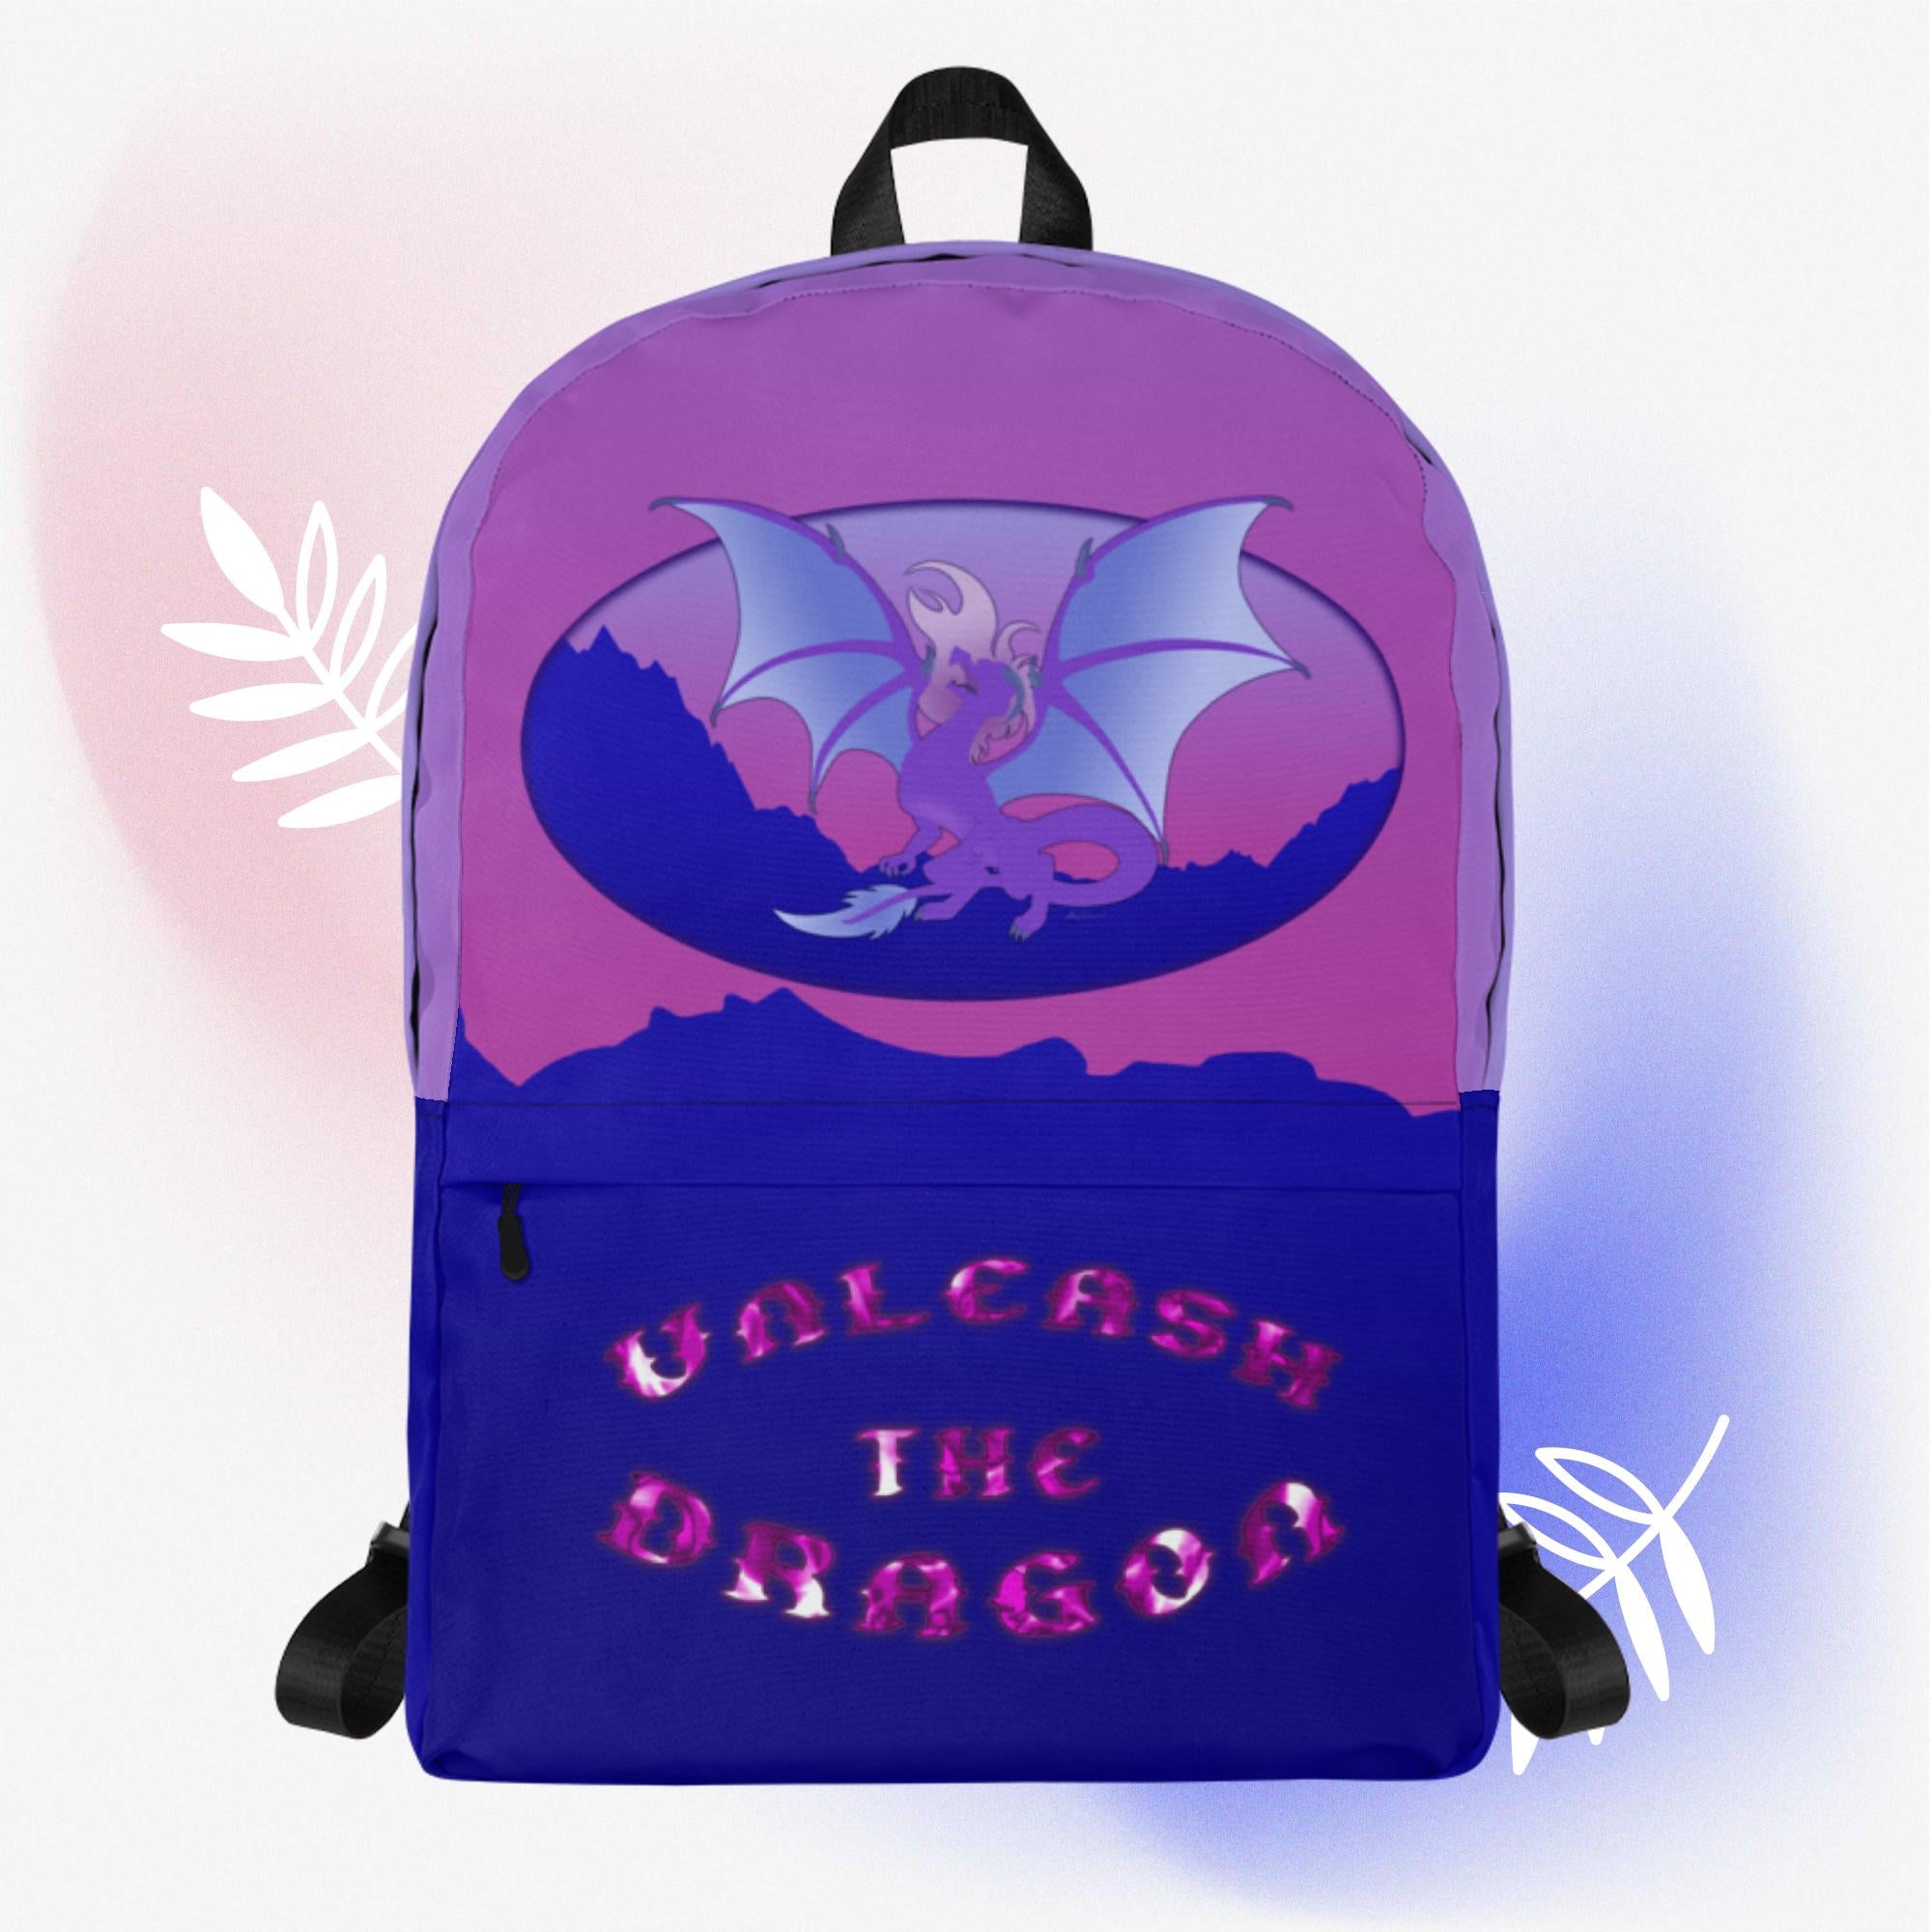 Voilet Dragon Backpack